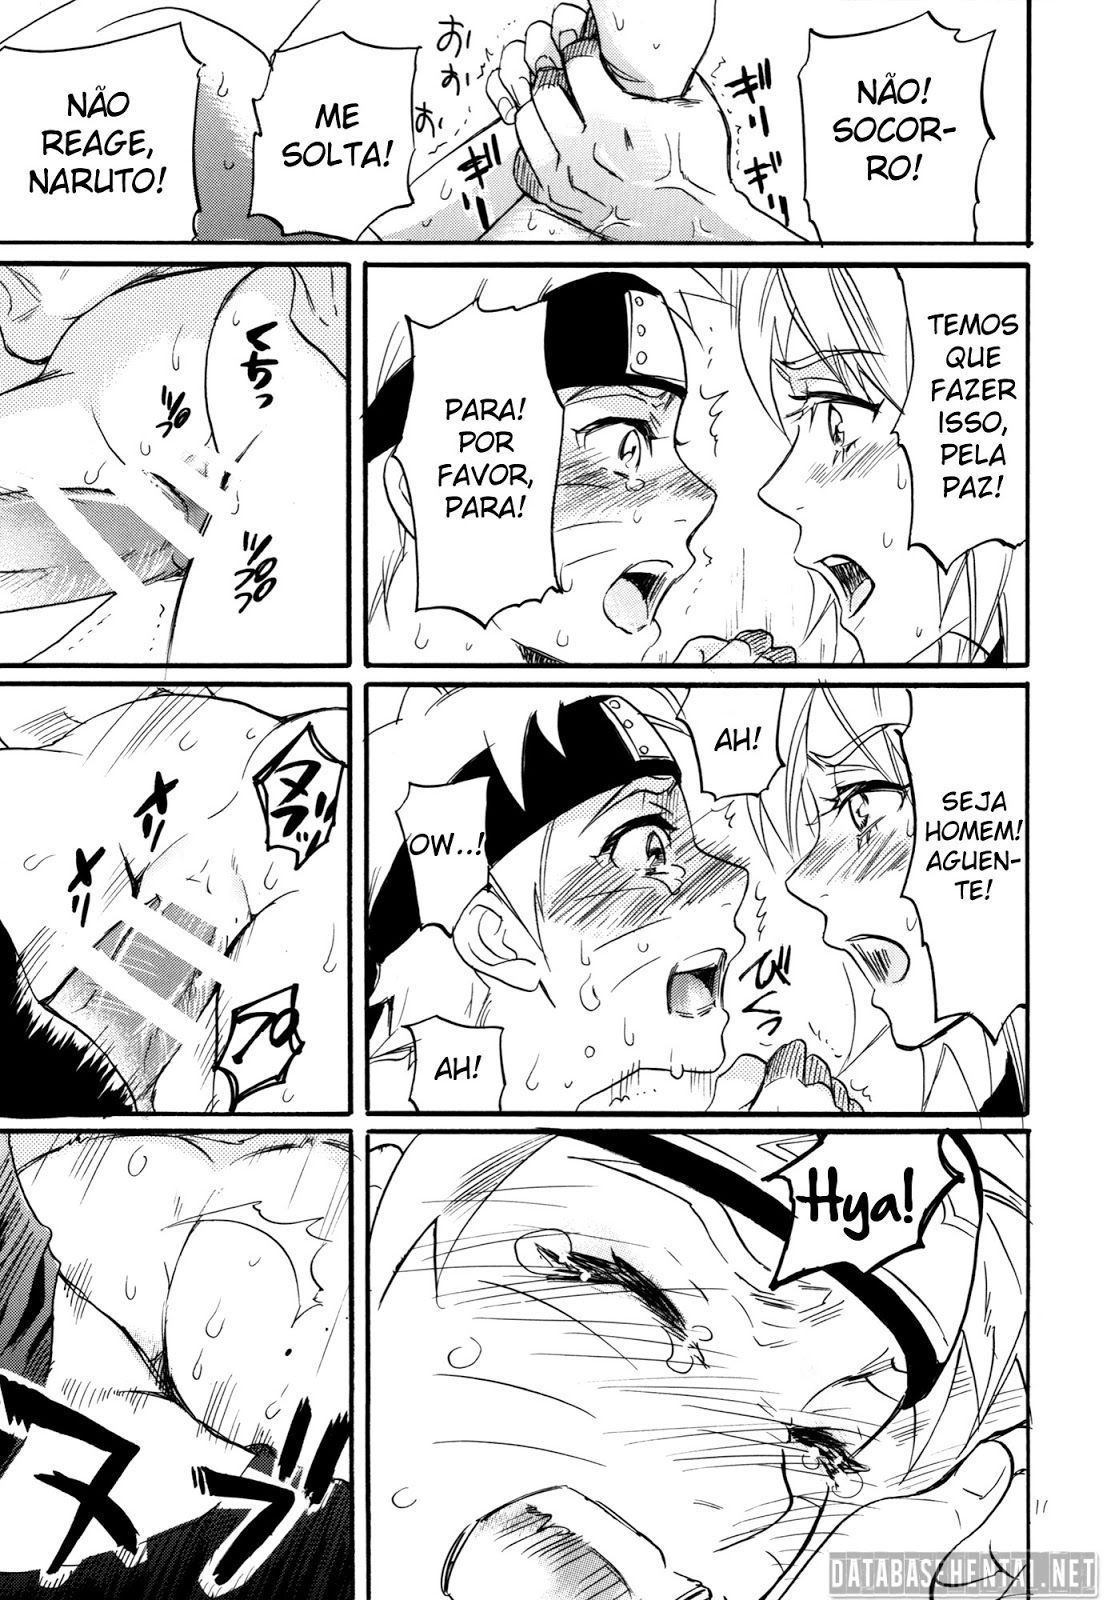 Sasuke comendo naruto - Foto 9